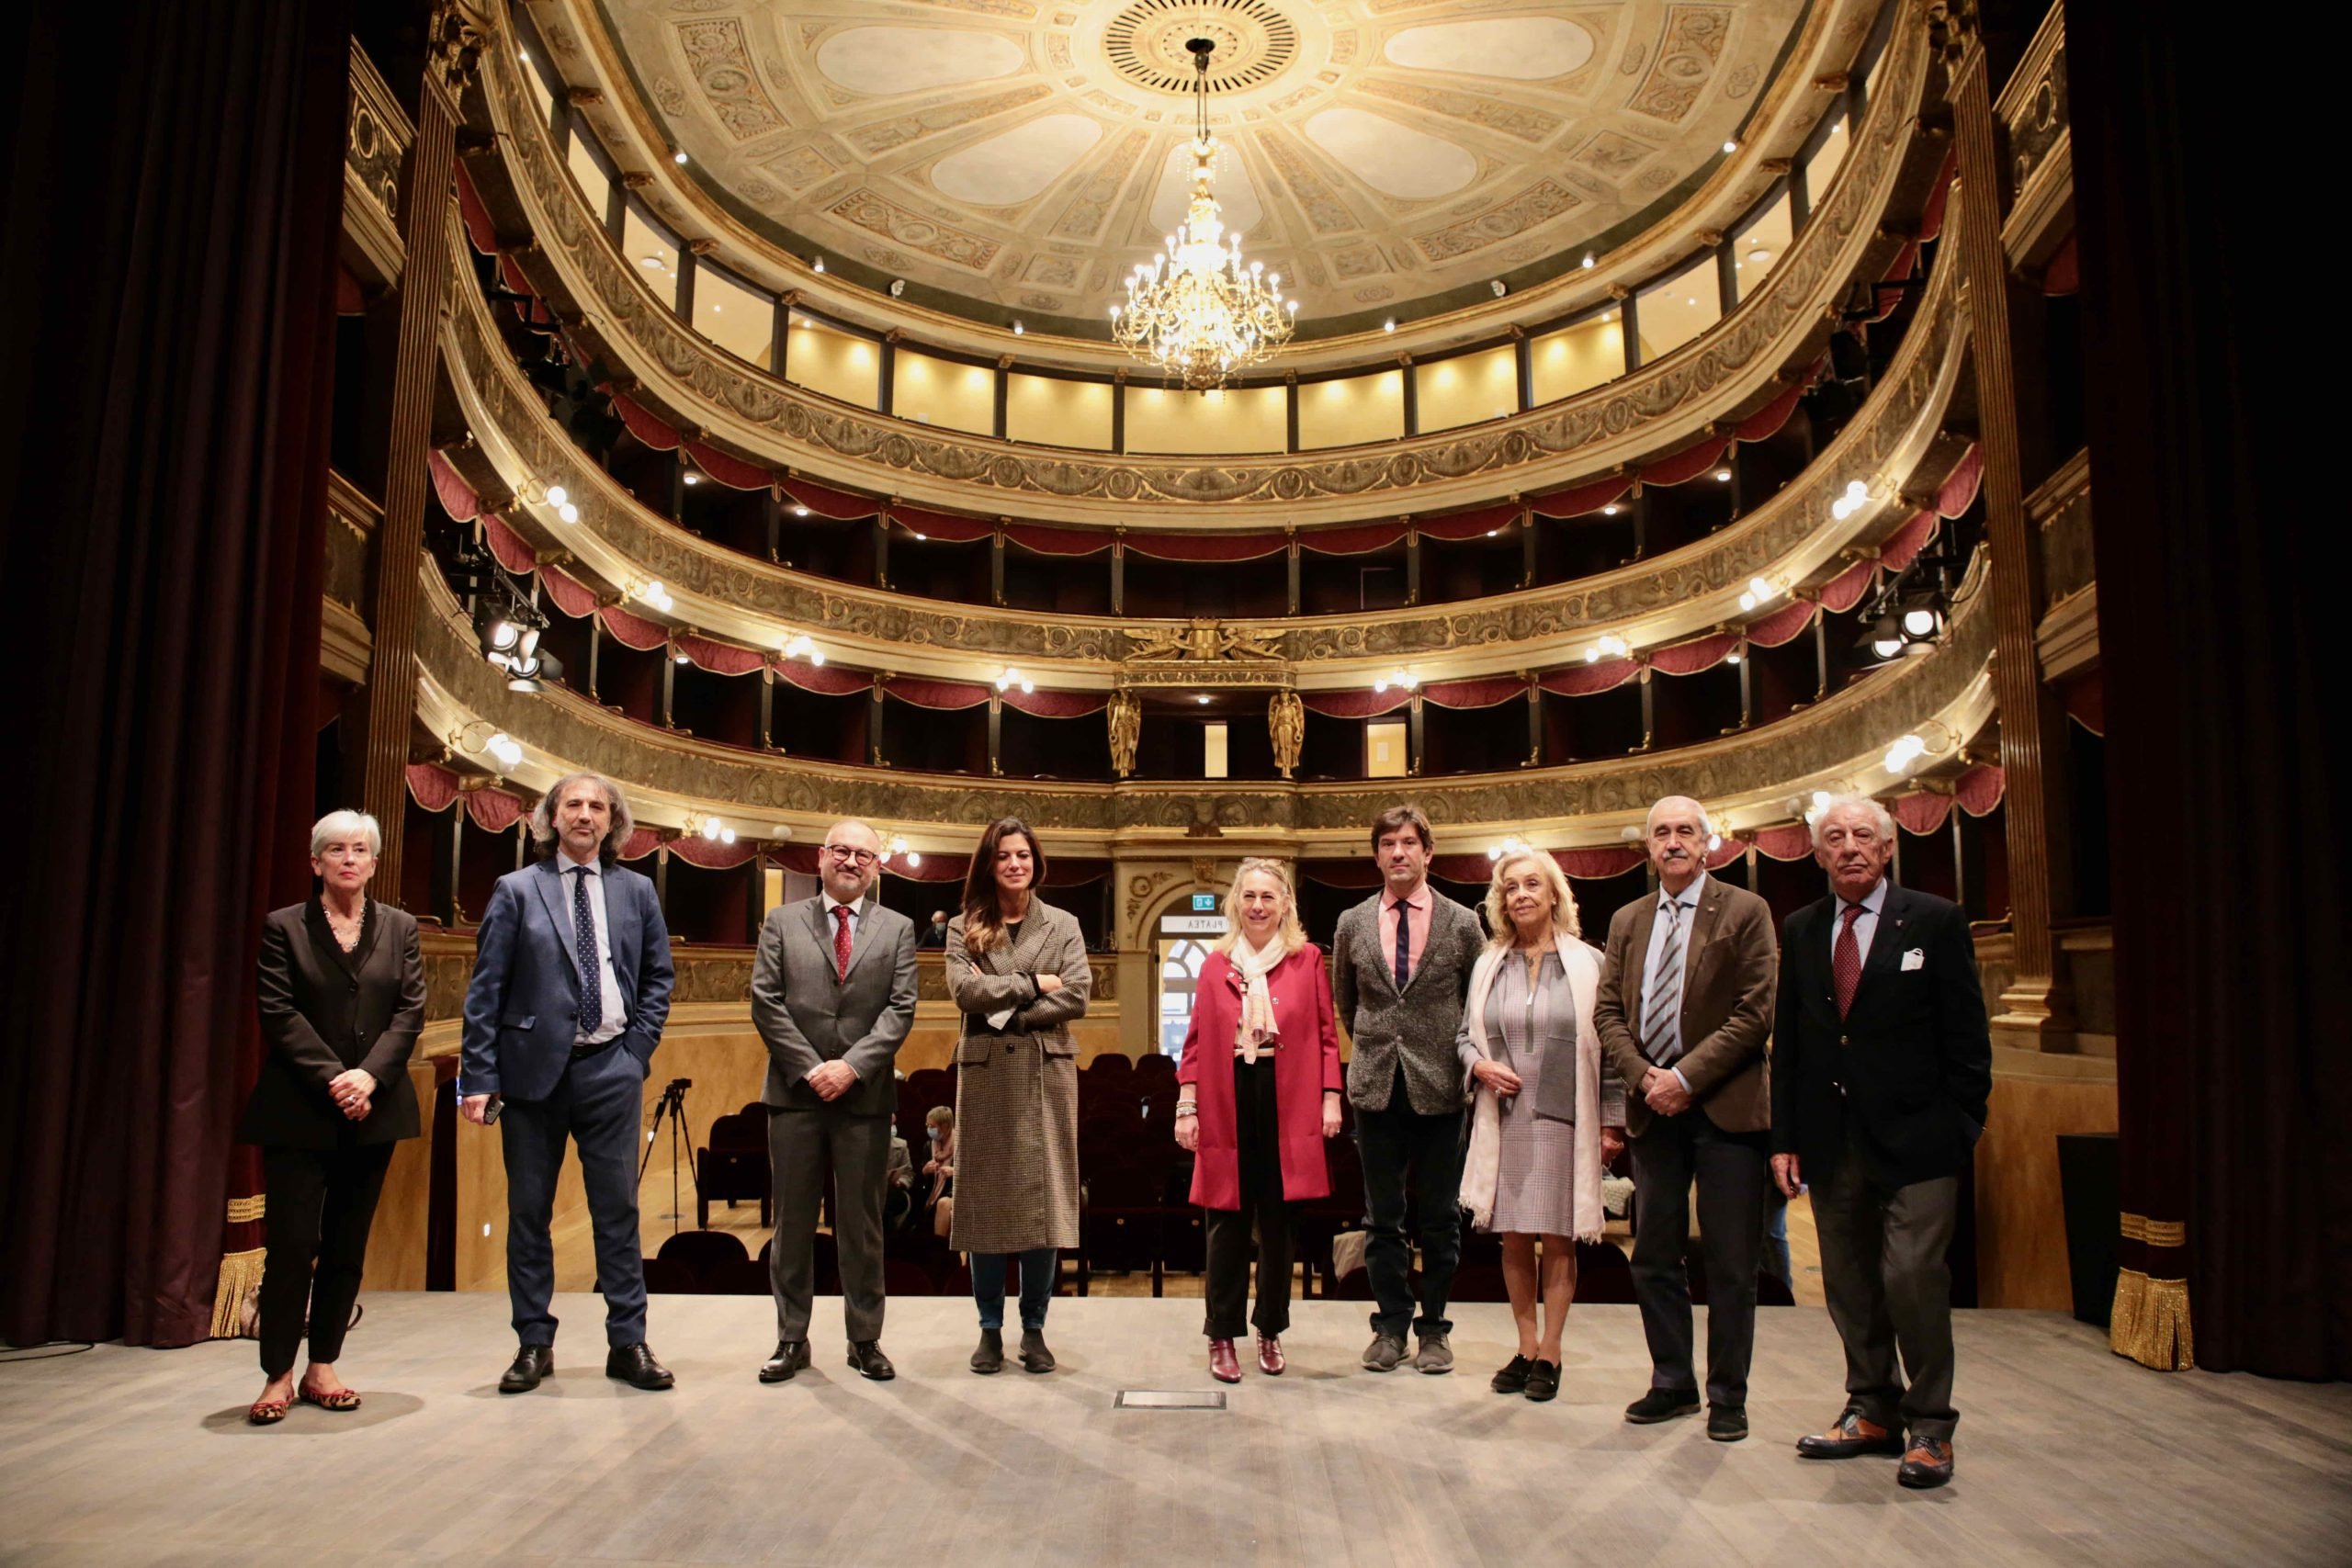 A Novi riapre il Teatro Romualdo Marenco: nuova stagione dal 6 novembre